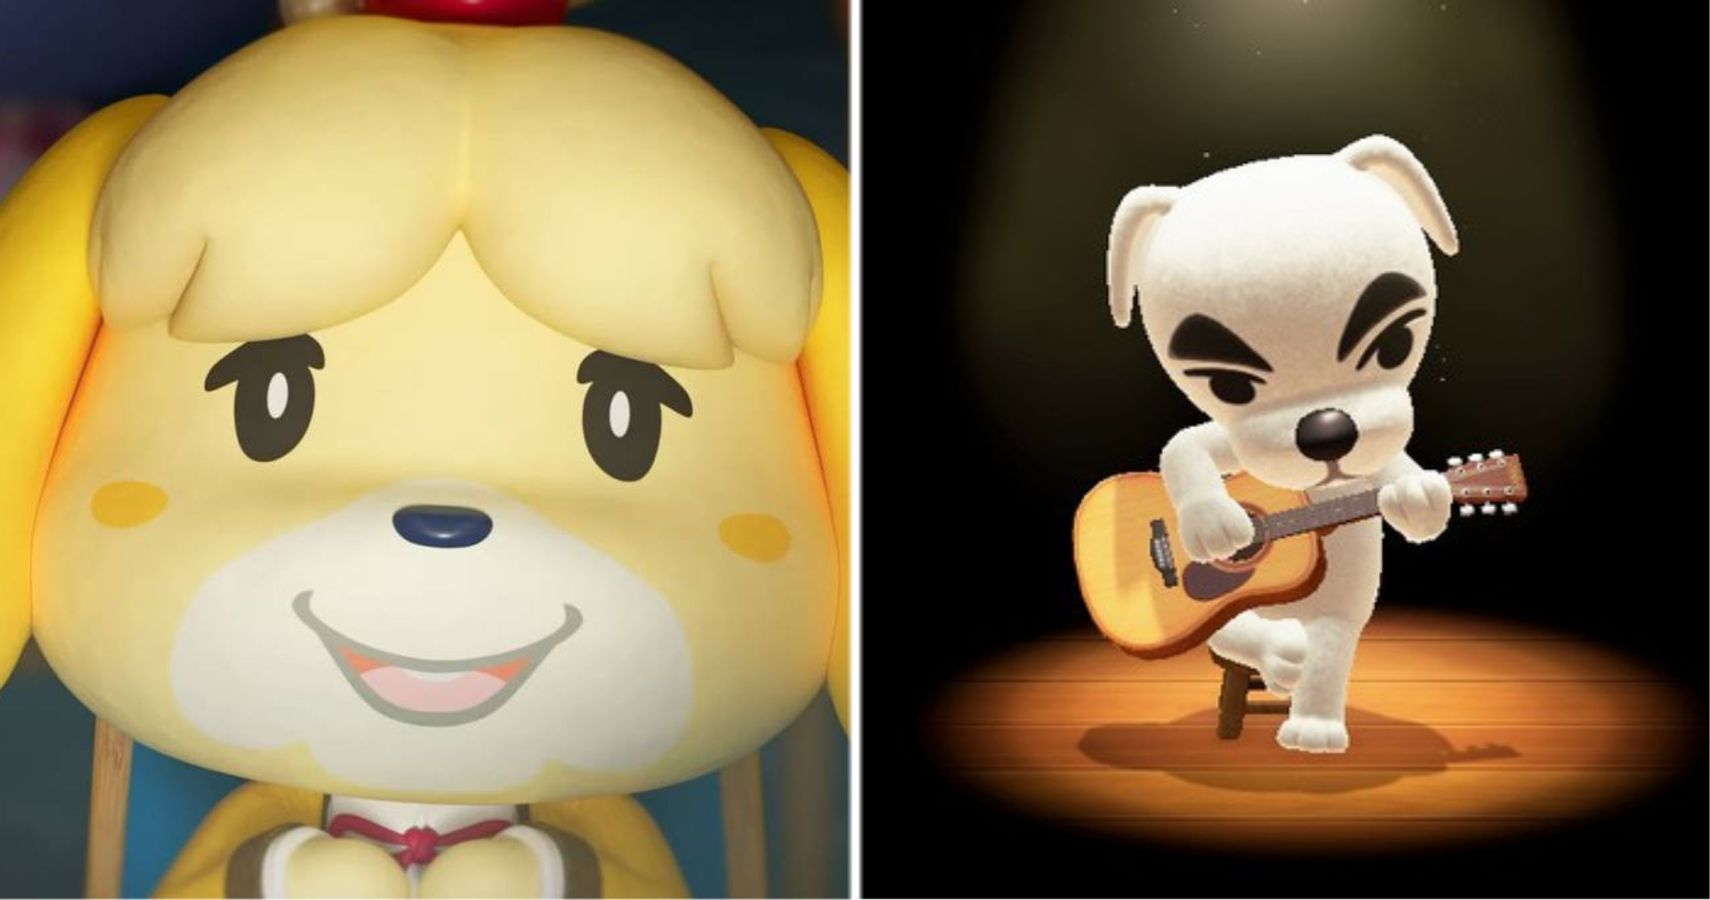 images Animal Crossing Isabelle X Kk Slider isabelle vs k k slider.